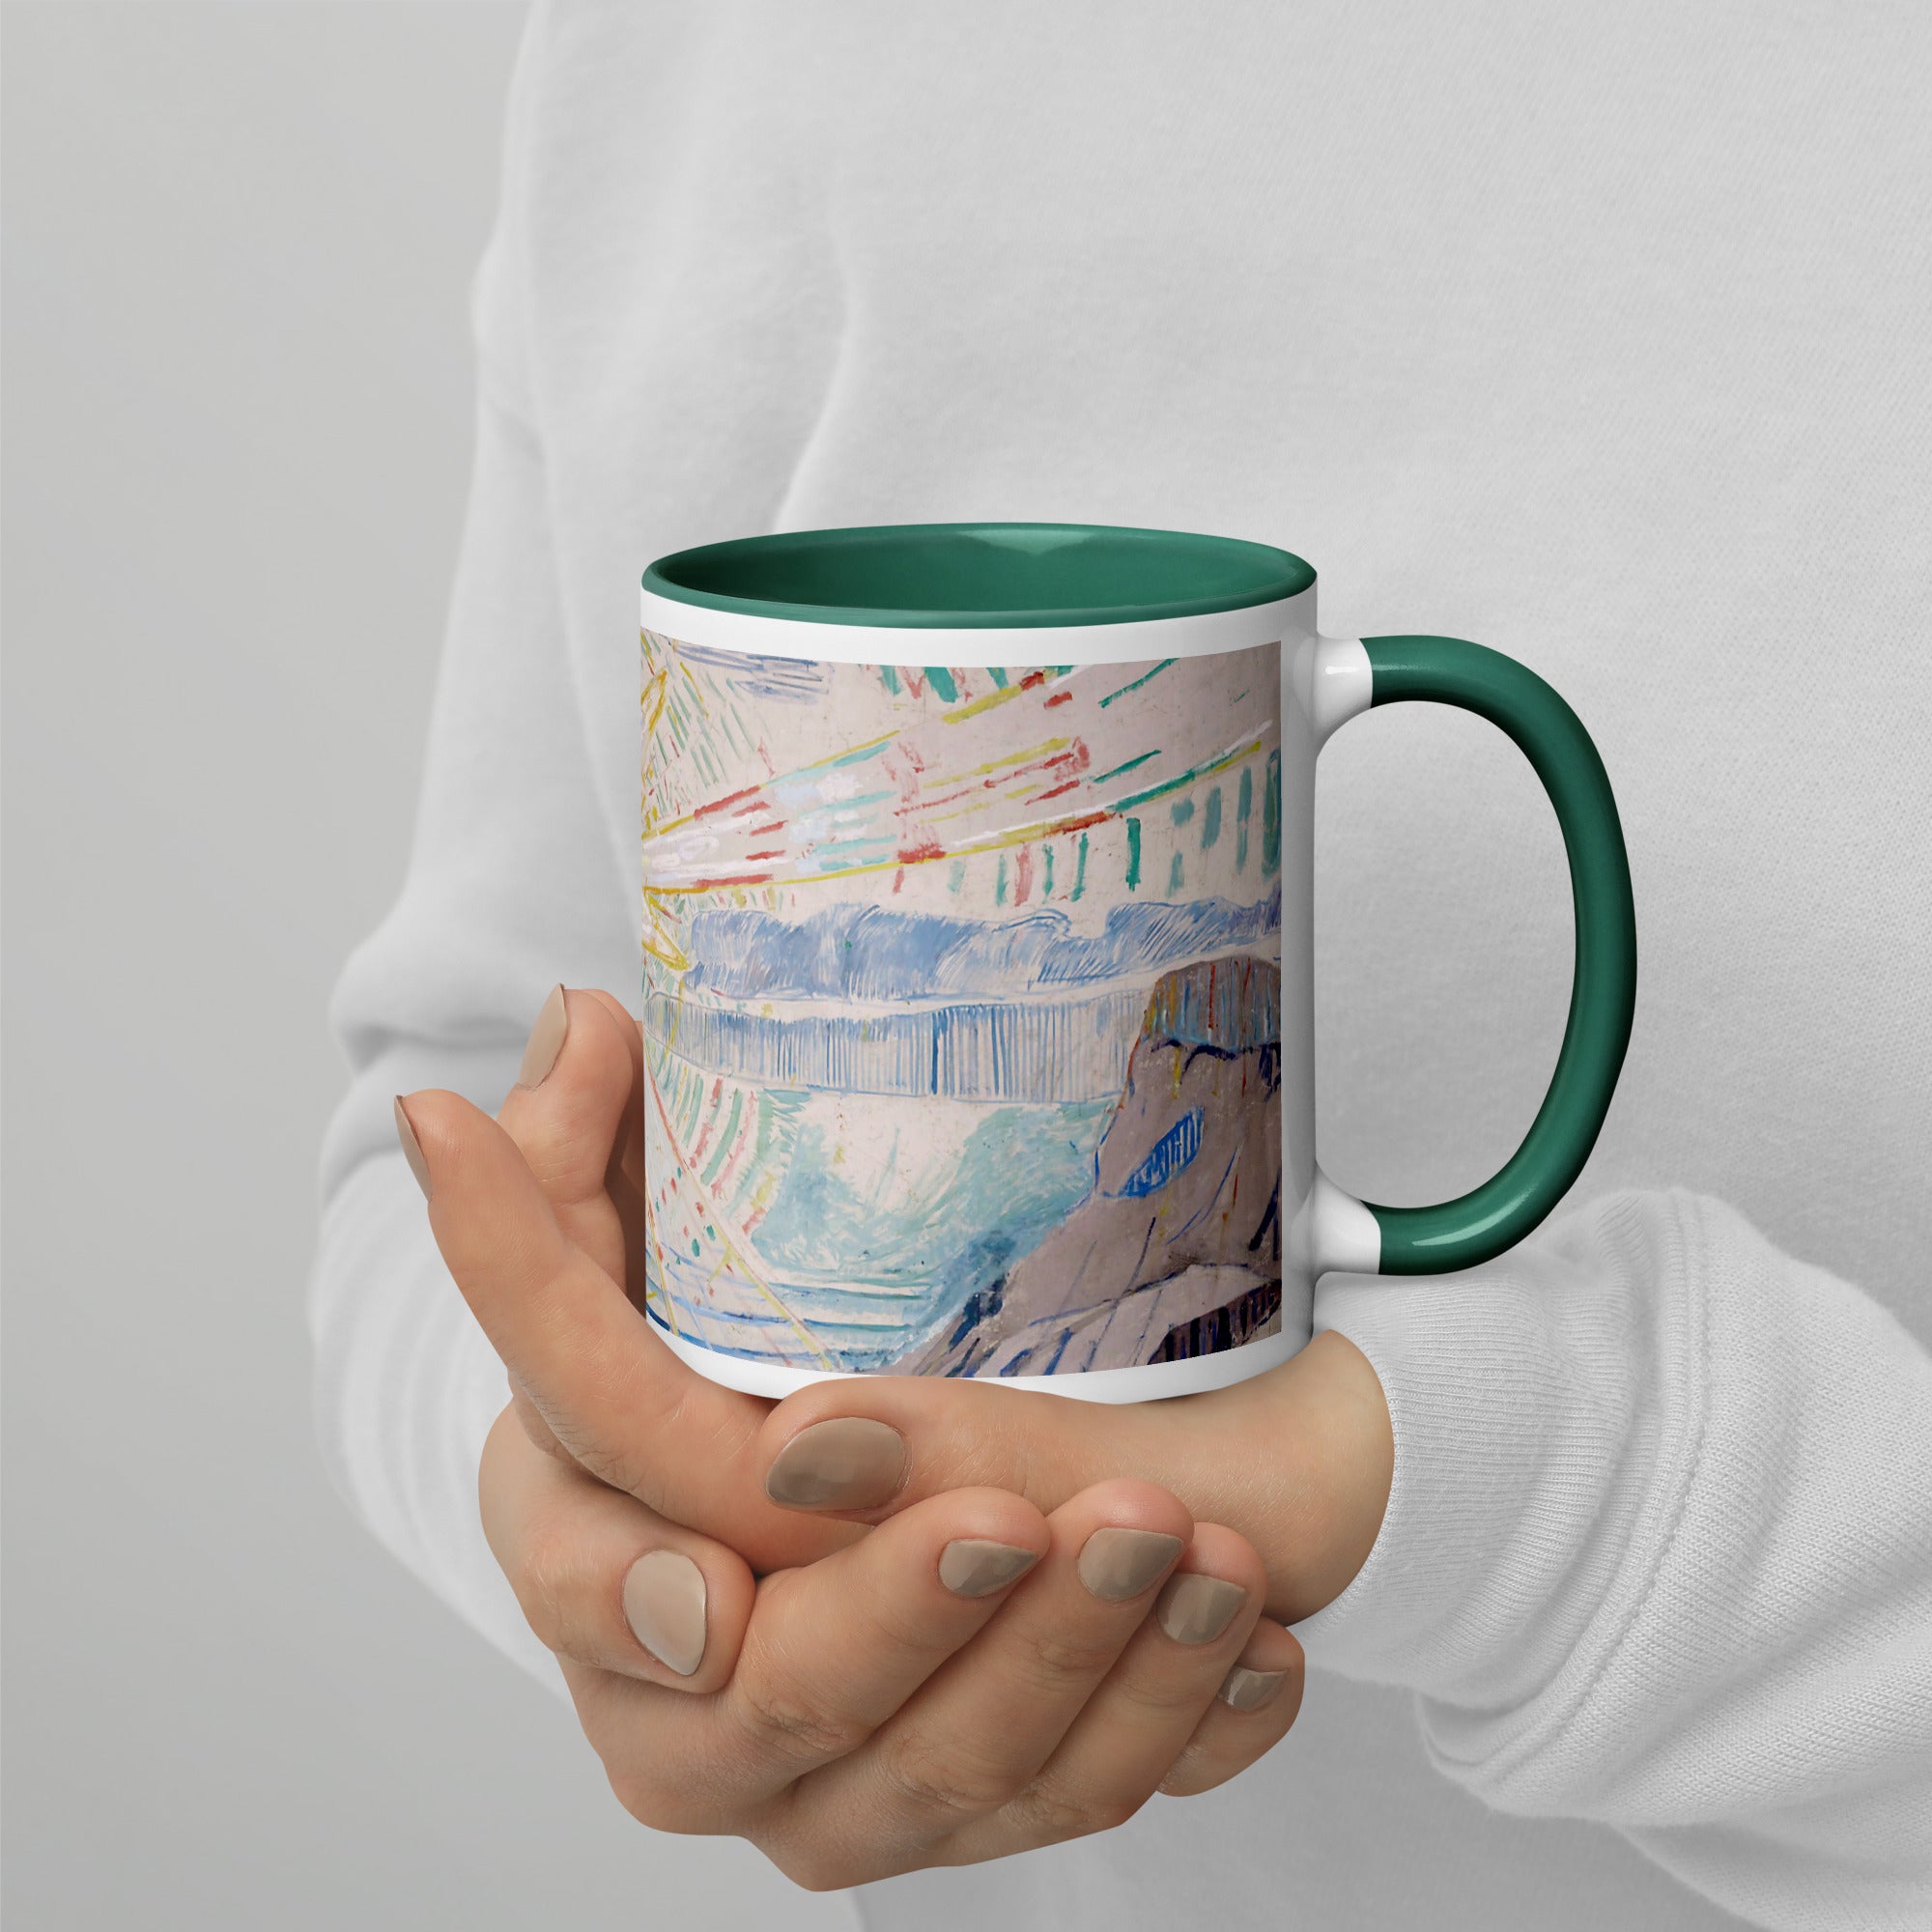 Edvard Munch 'The Sun' Famous Painting Ceramic Mug | Premium Art Mug